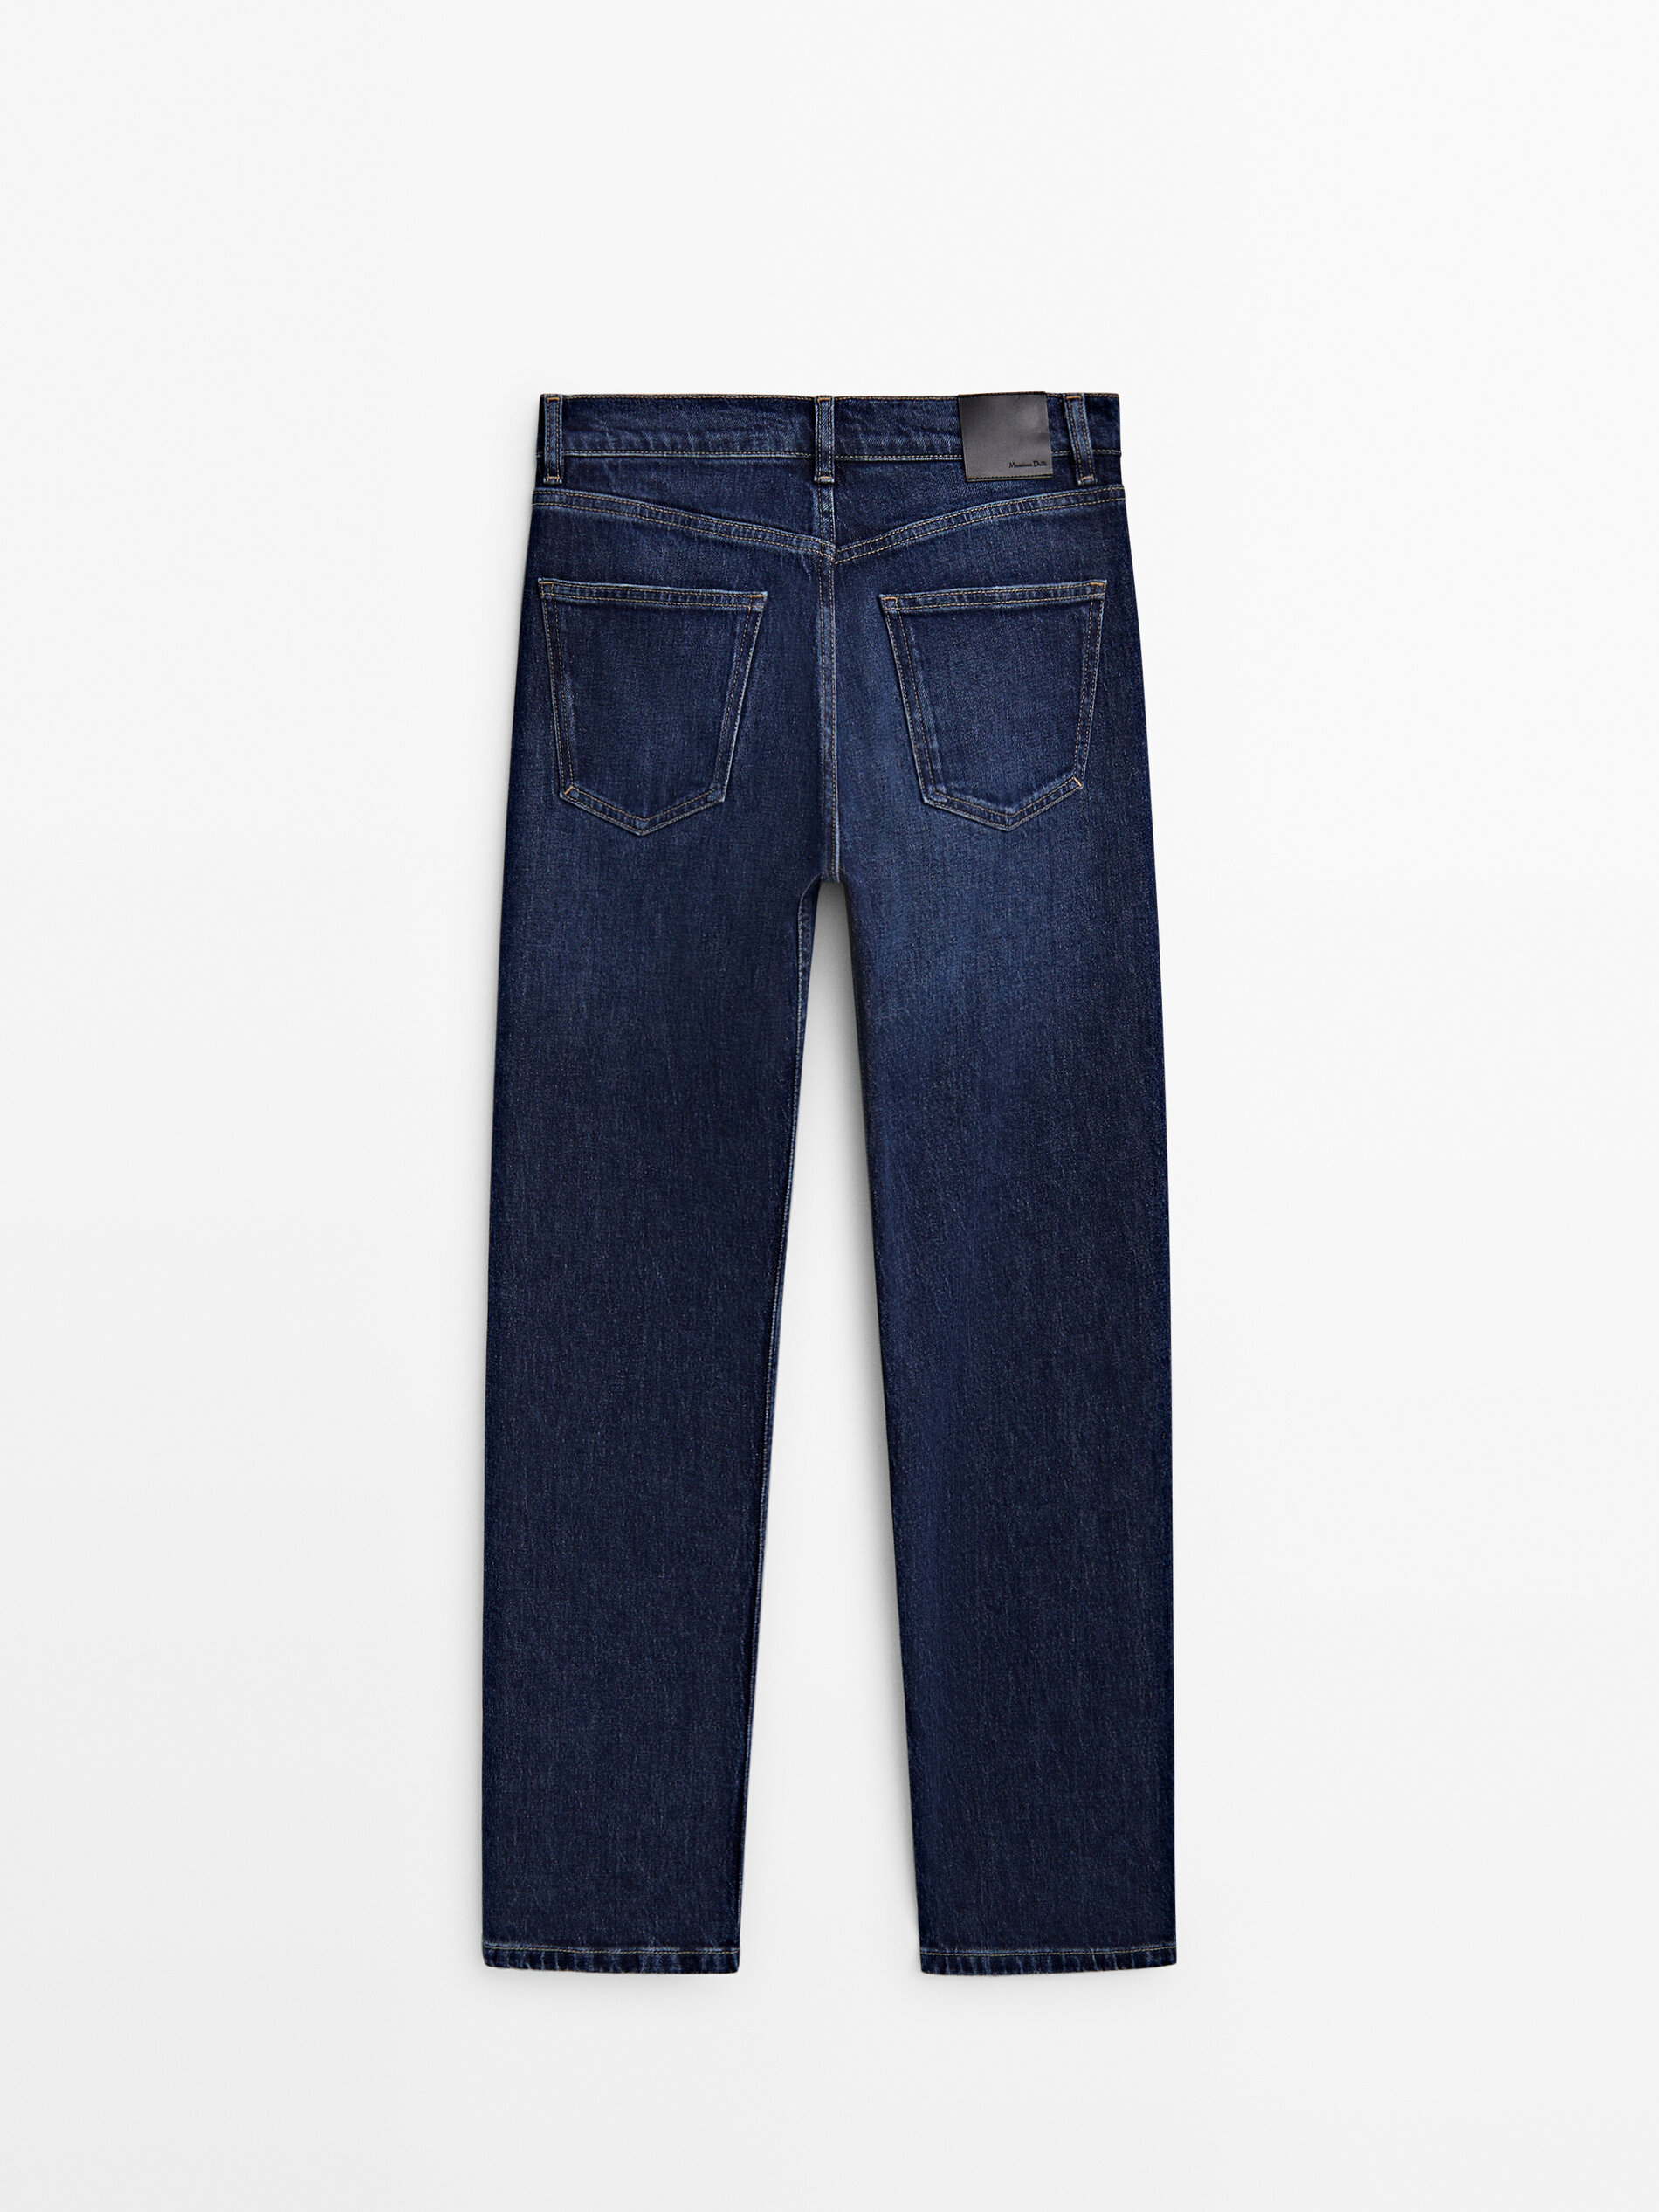 Jeans tiro medio corte recto confort